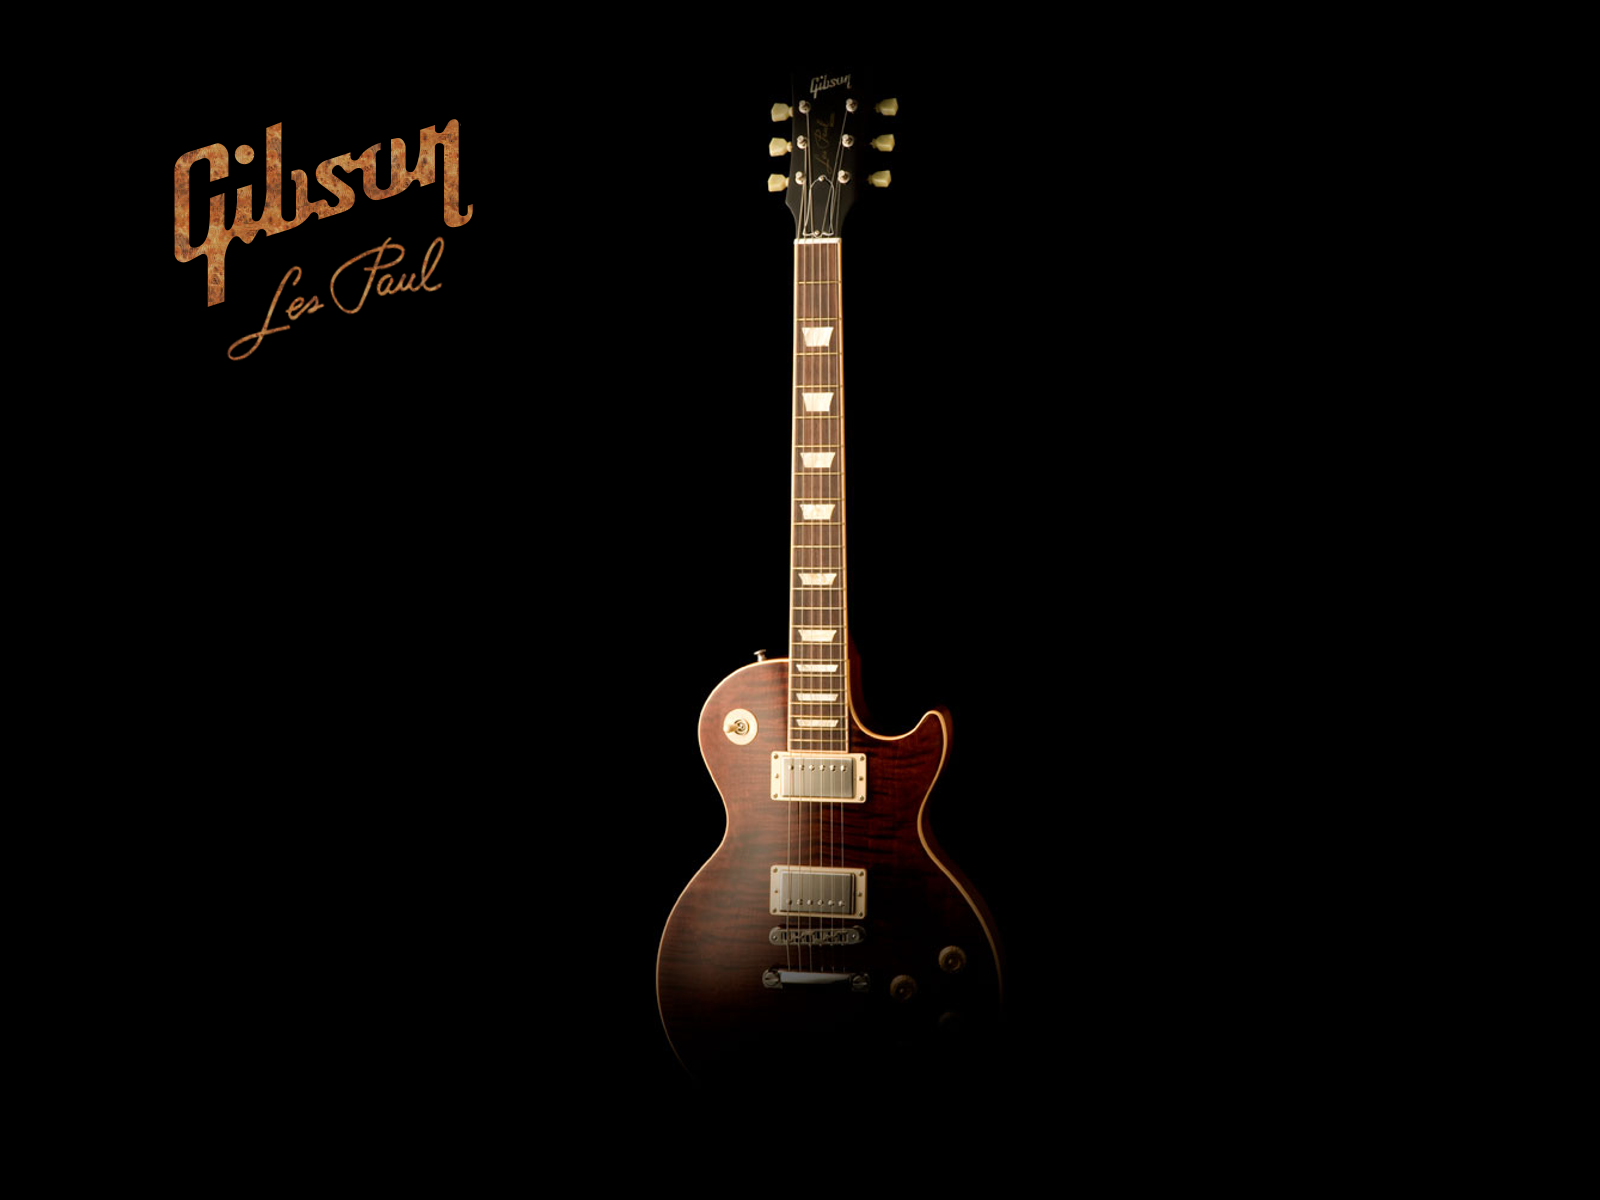 Gibson Guitar Wallpaper Jpg